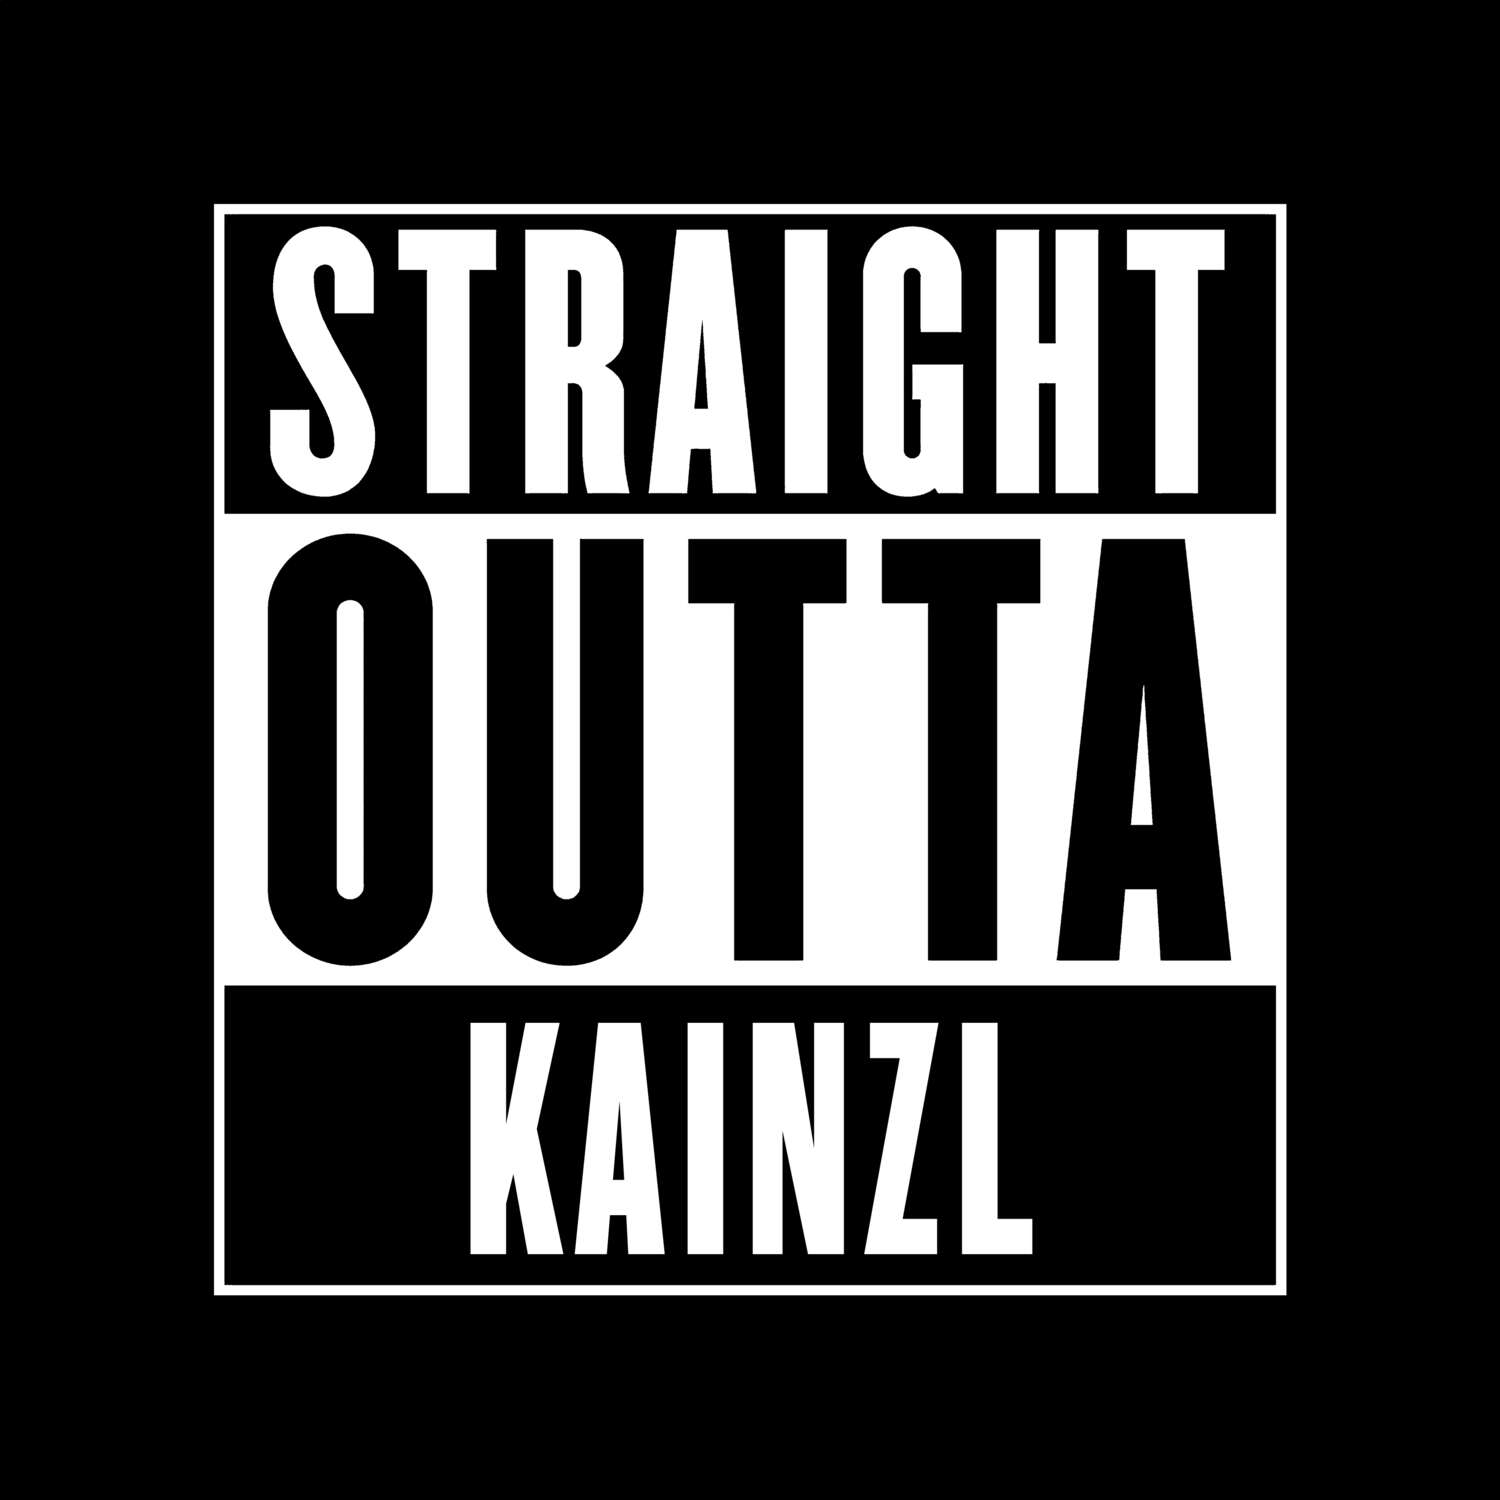 Kainzl T-Shirt »Straight Outta«